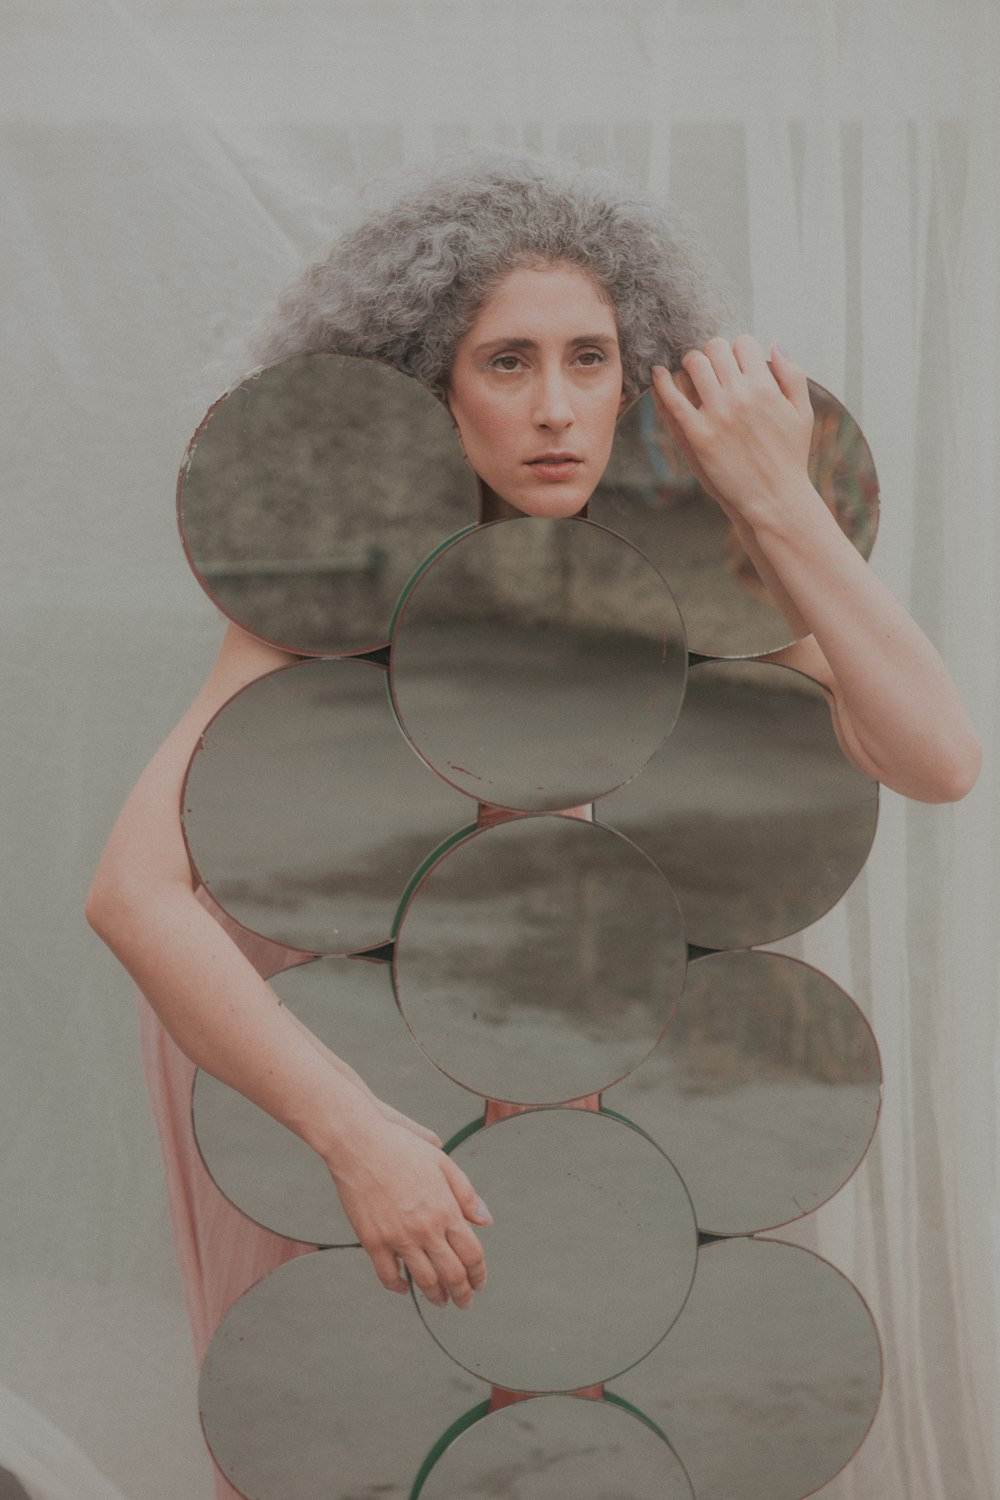 Frau in rosa Tanktop mit rundem Spiegel